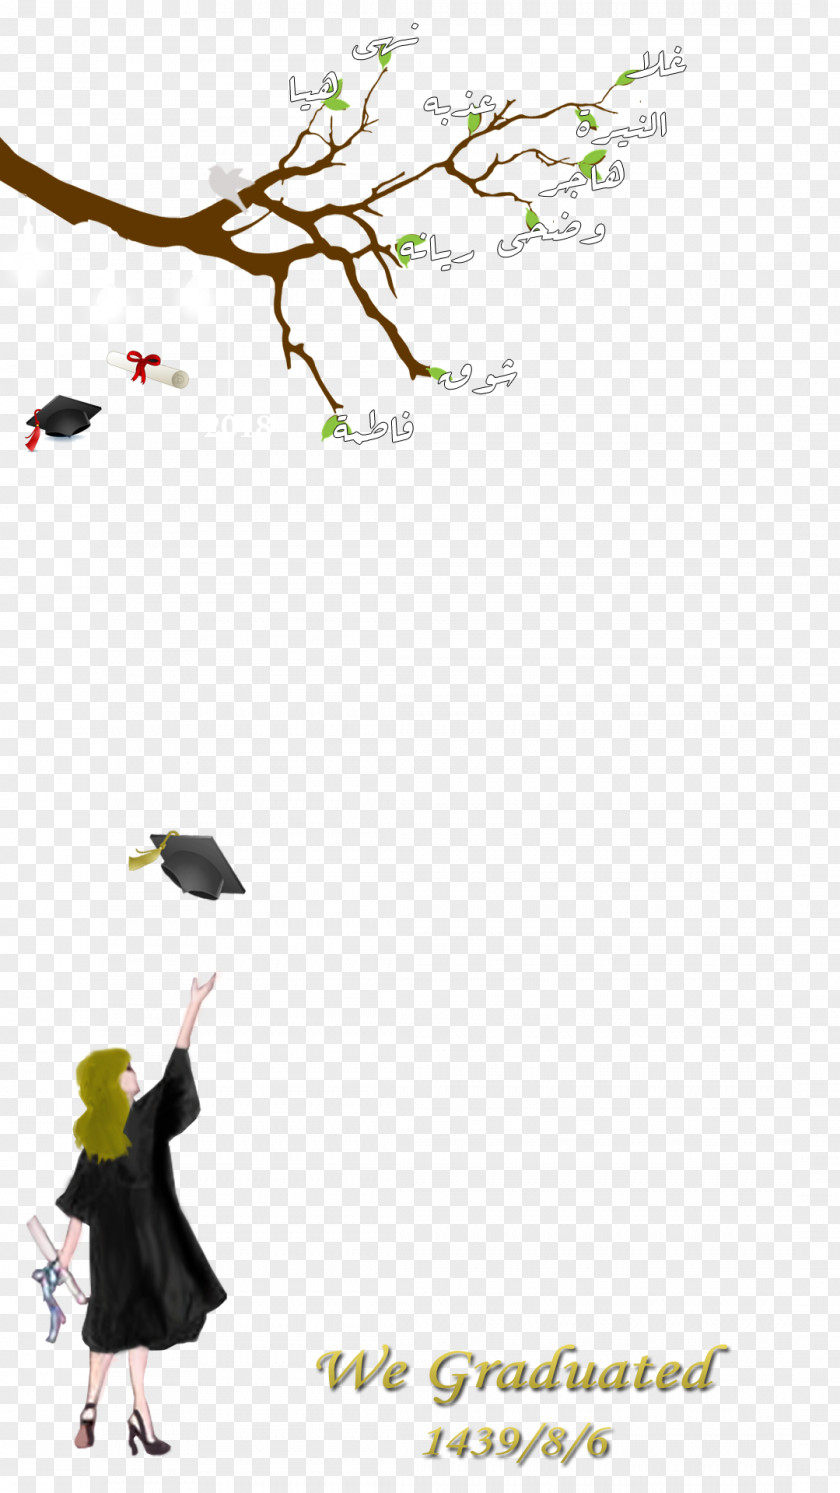 Congratulations Graduate Desktop Wallpaper Graduation Ceremony Clip Art PNG